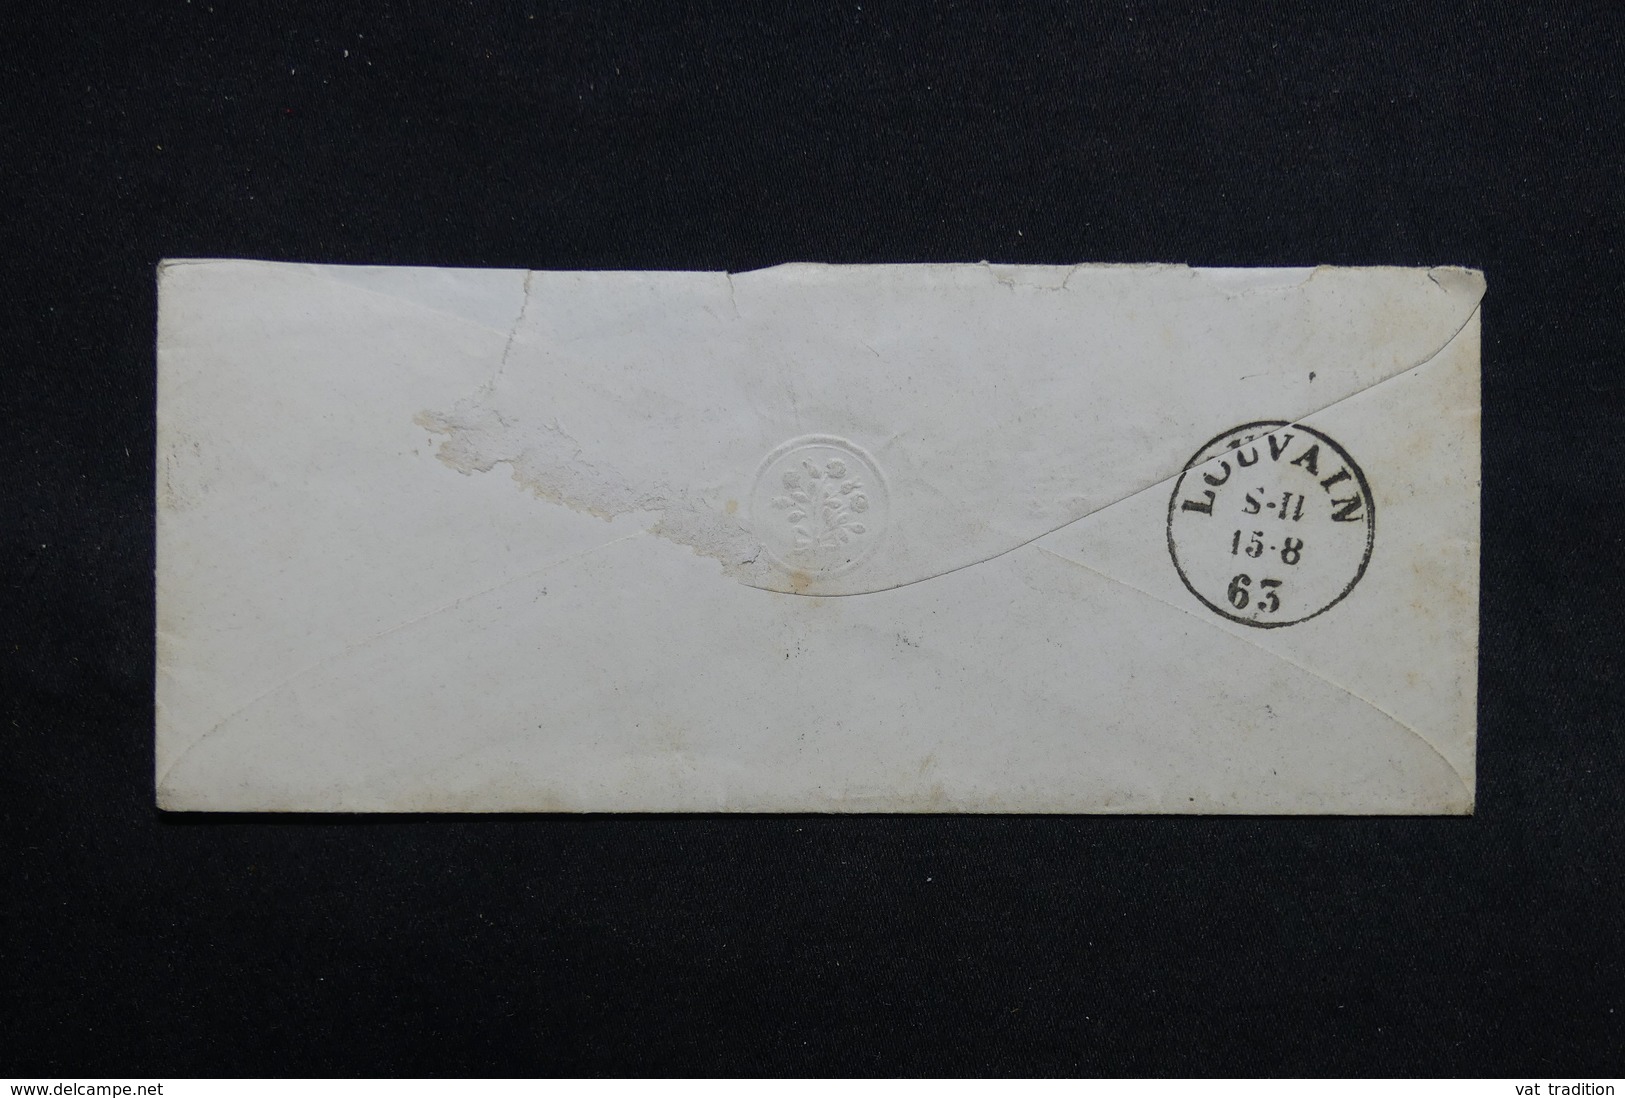 BELGIQUE - Lot de 4 enveloppes période 1856 /1863 , même archive - L 31730